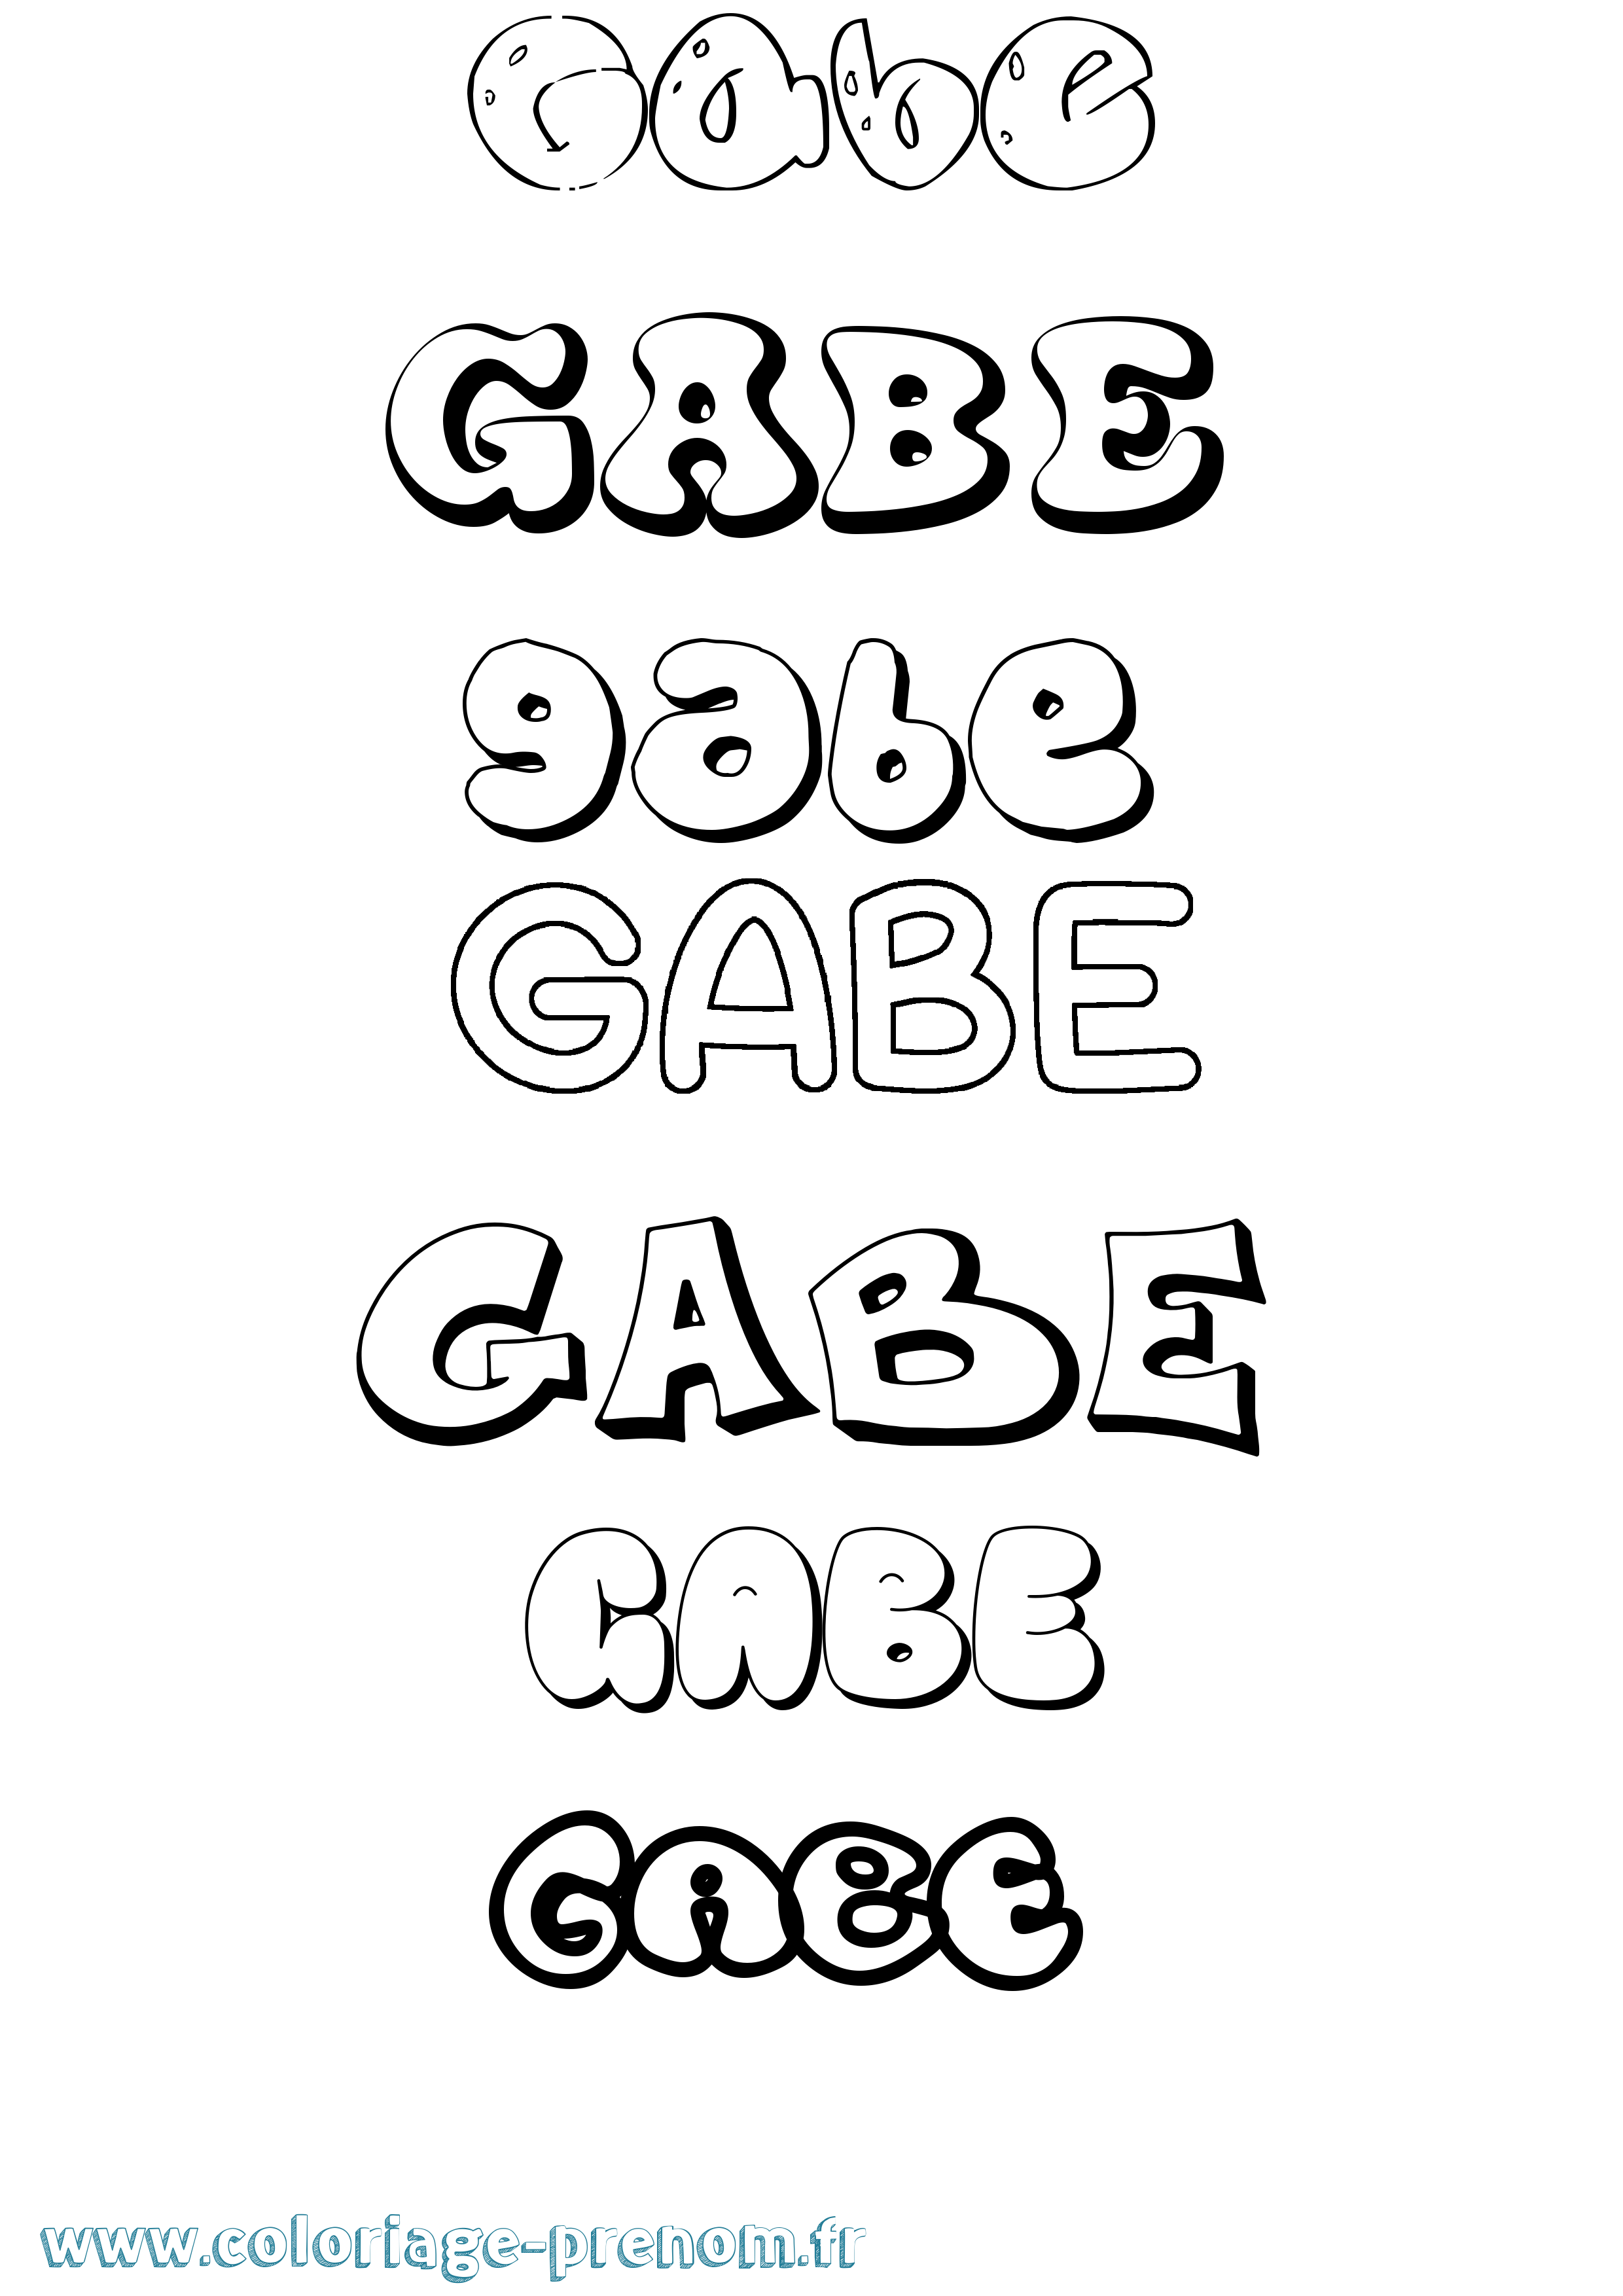 Coloriage prénom Gabe Bubble